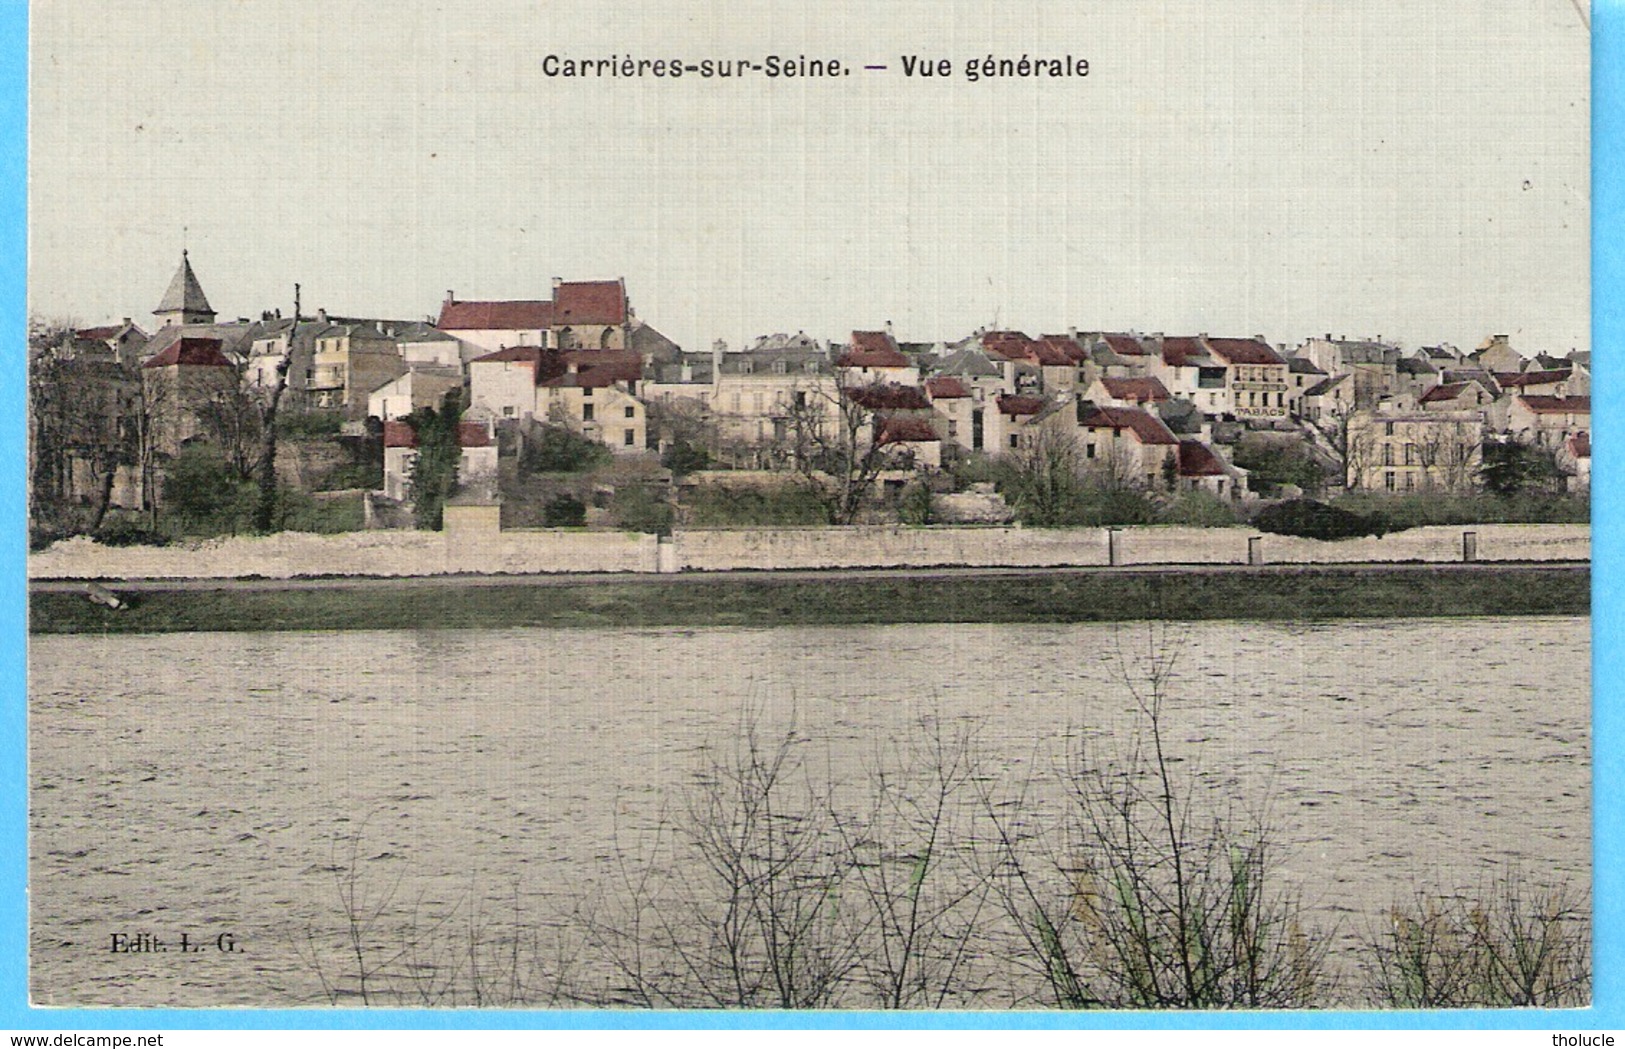 Carrières-sur-Seine-Yvelines-+/-1907-Vue Générale Sur La Ville Et Son Eglise-Carte Postale Toilée En Couleur-Edit.L.G. - Carrières-sur-Seine